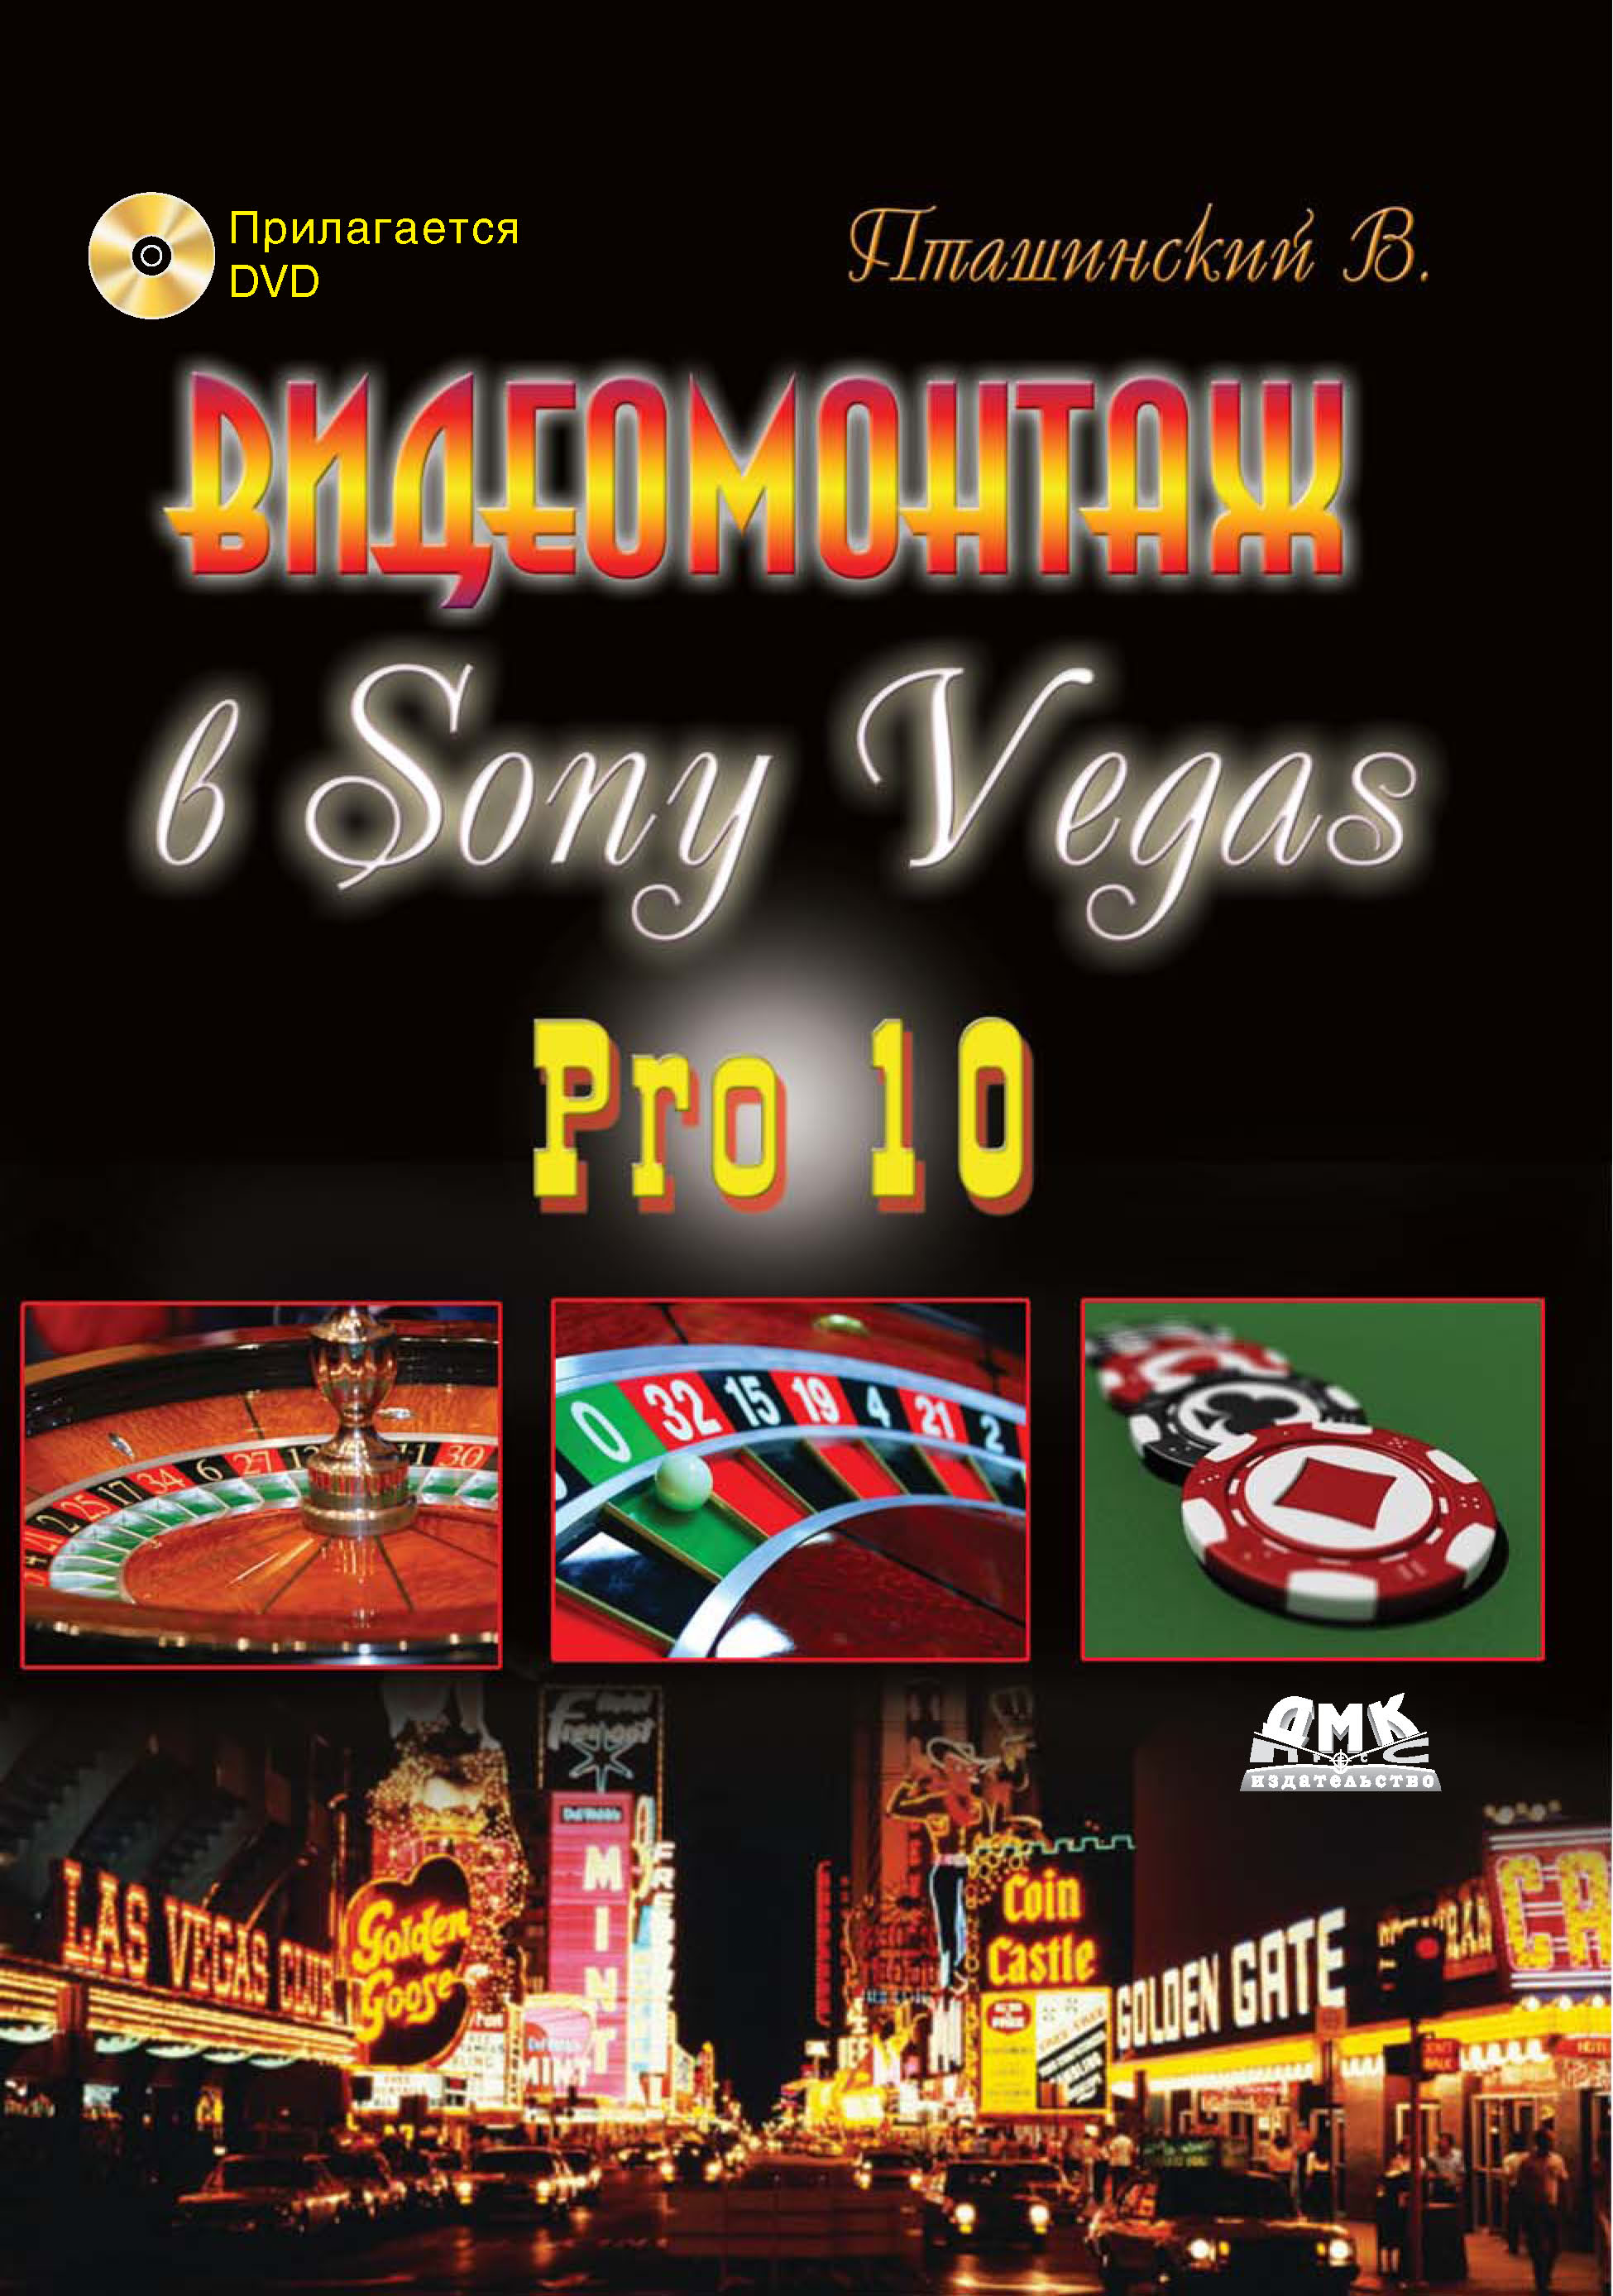 Книга  Видеомонтаж в Sony Vegas Pro 10 созданная Владимир Пташинский может относится к жанру программы, руководства. Стоимость электронной книги Видеомонтаж в Sony Vegas Pro 10 с идентификатором 22075373 составляет 199.00 руб.